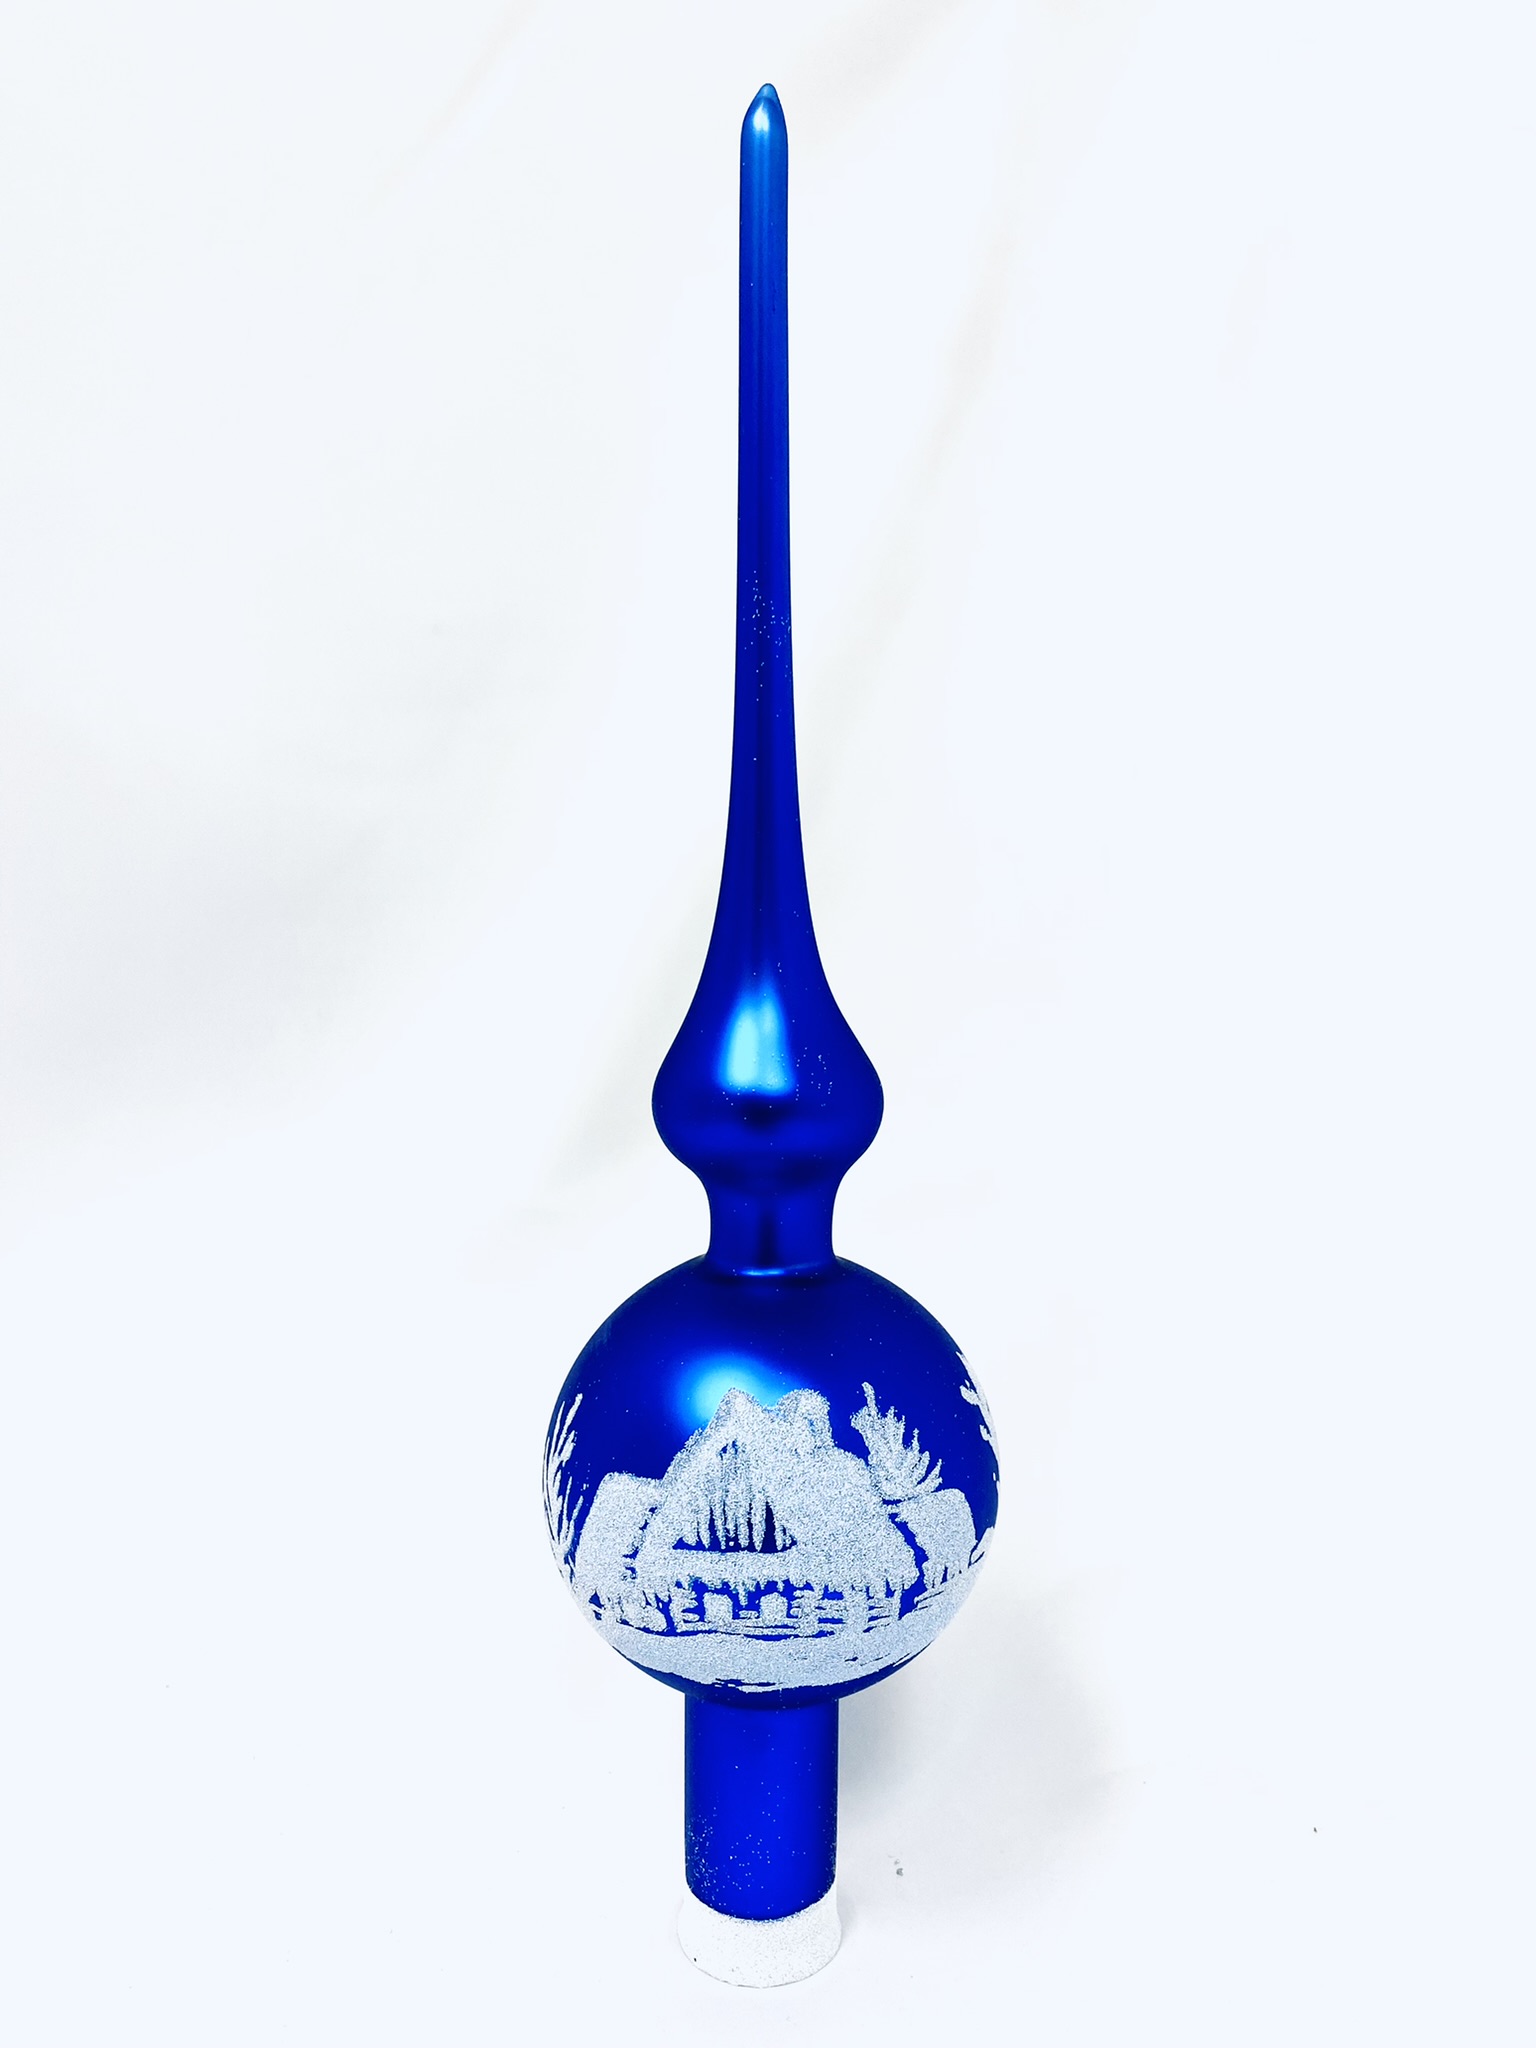 Irisa Vánoční skleněná špice MODRÁ LHOTA s dekorem vesnička 28 cm, 1 ks Balení: 1ks, Barva: modrá, Velikost: 28 cm